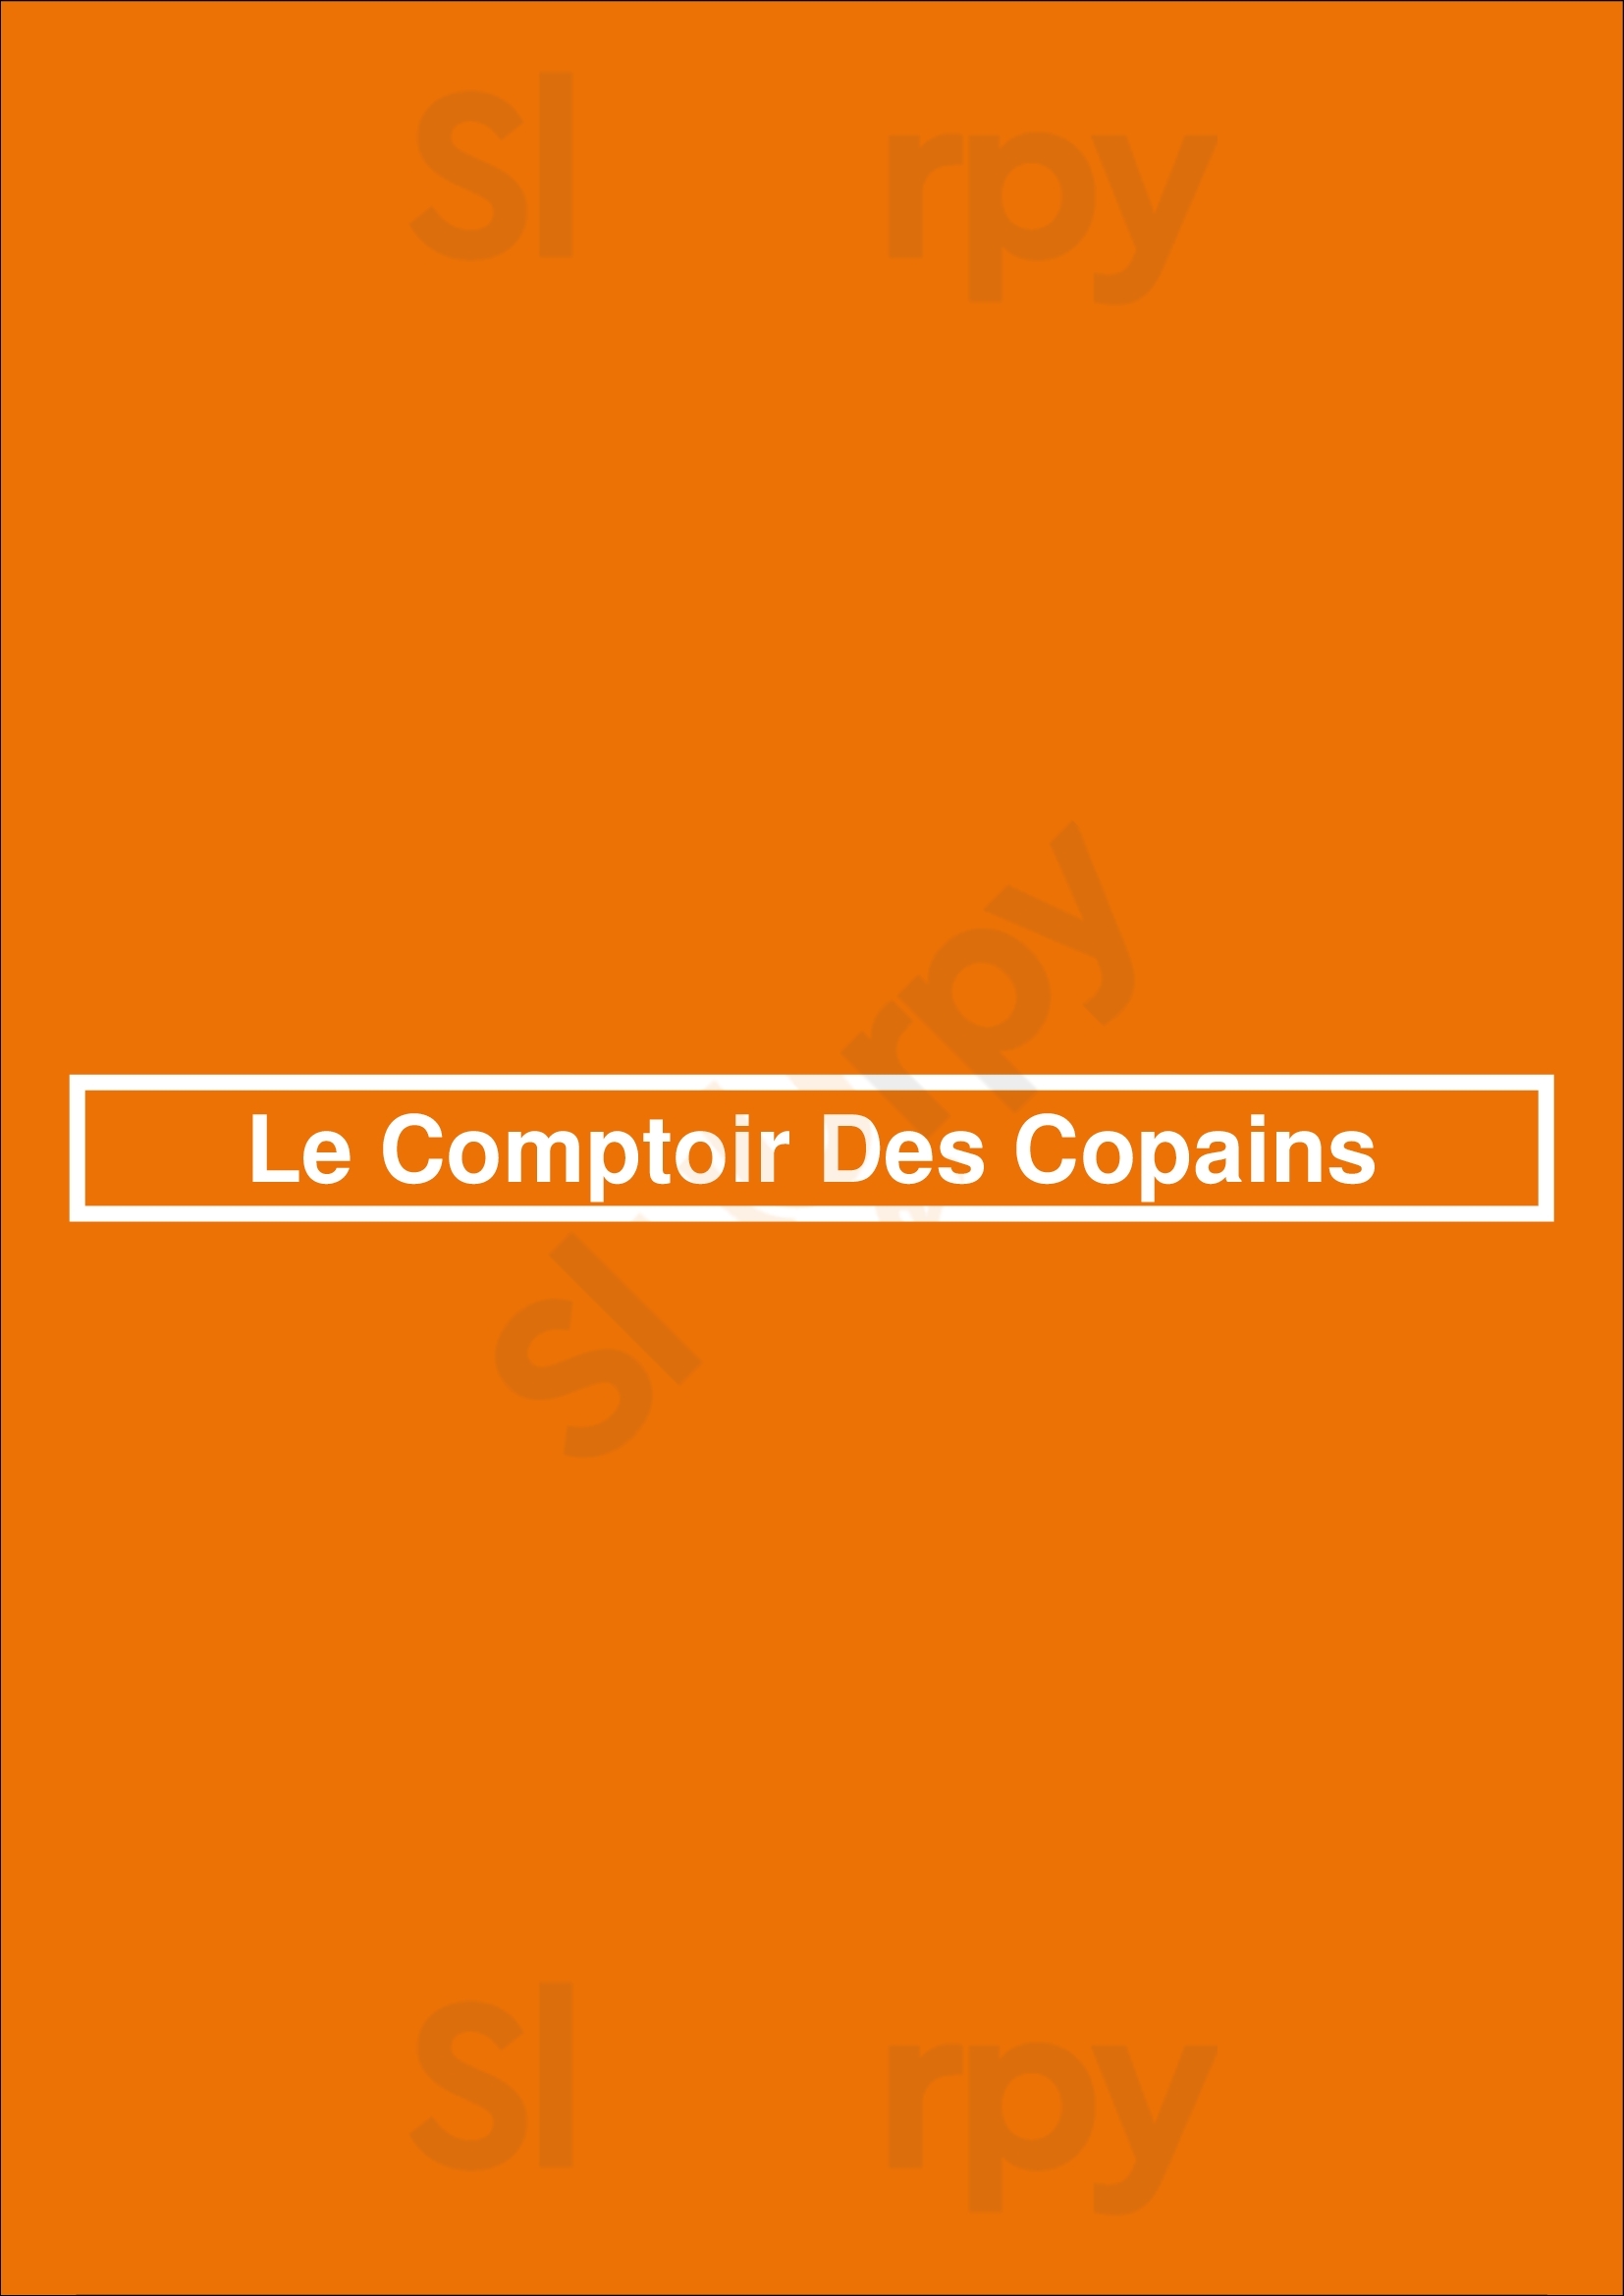 Le Comptoir Des Copains Lyon Menu - 1